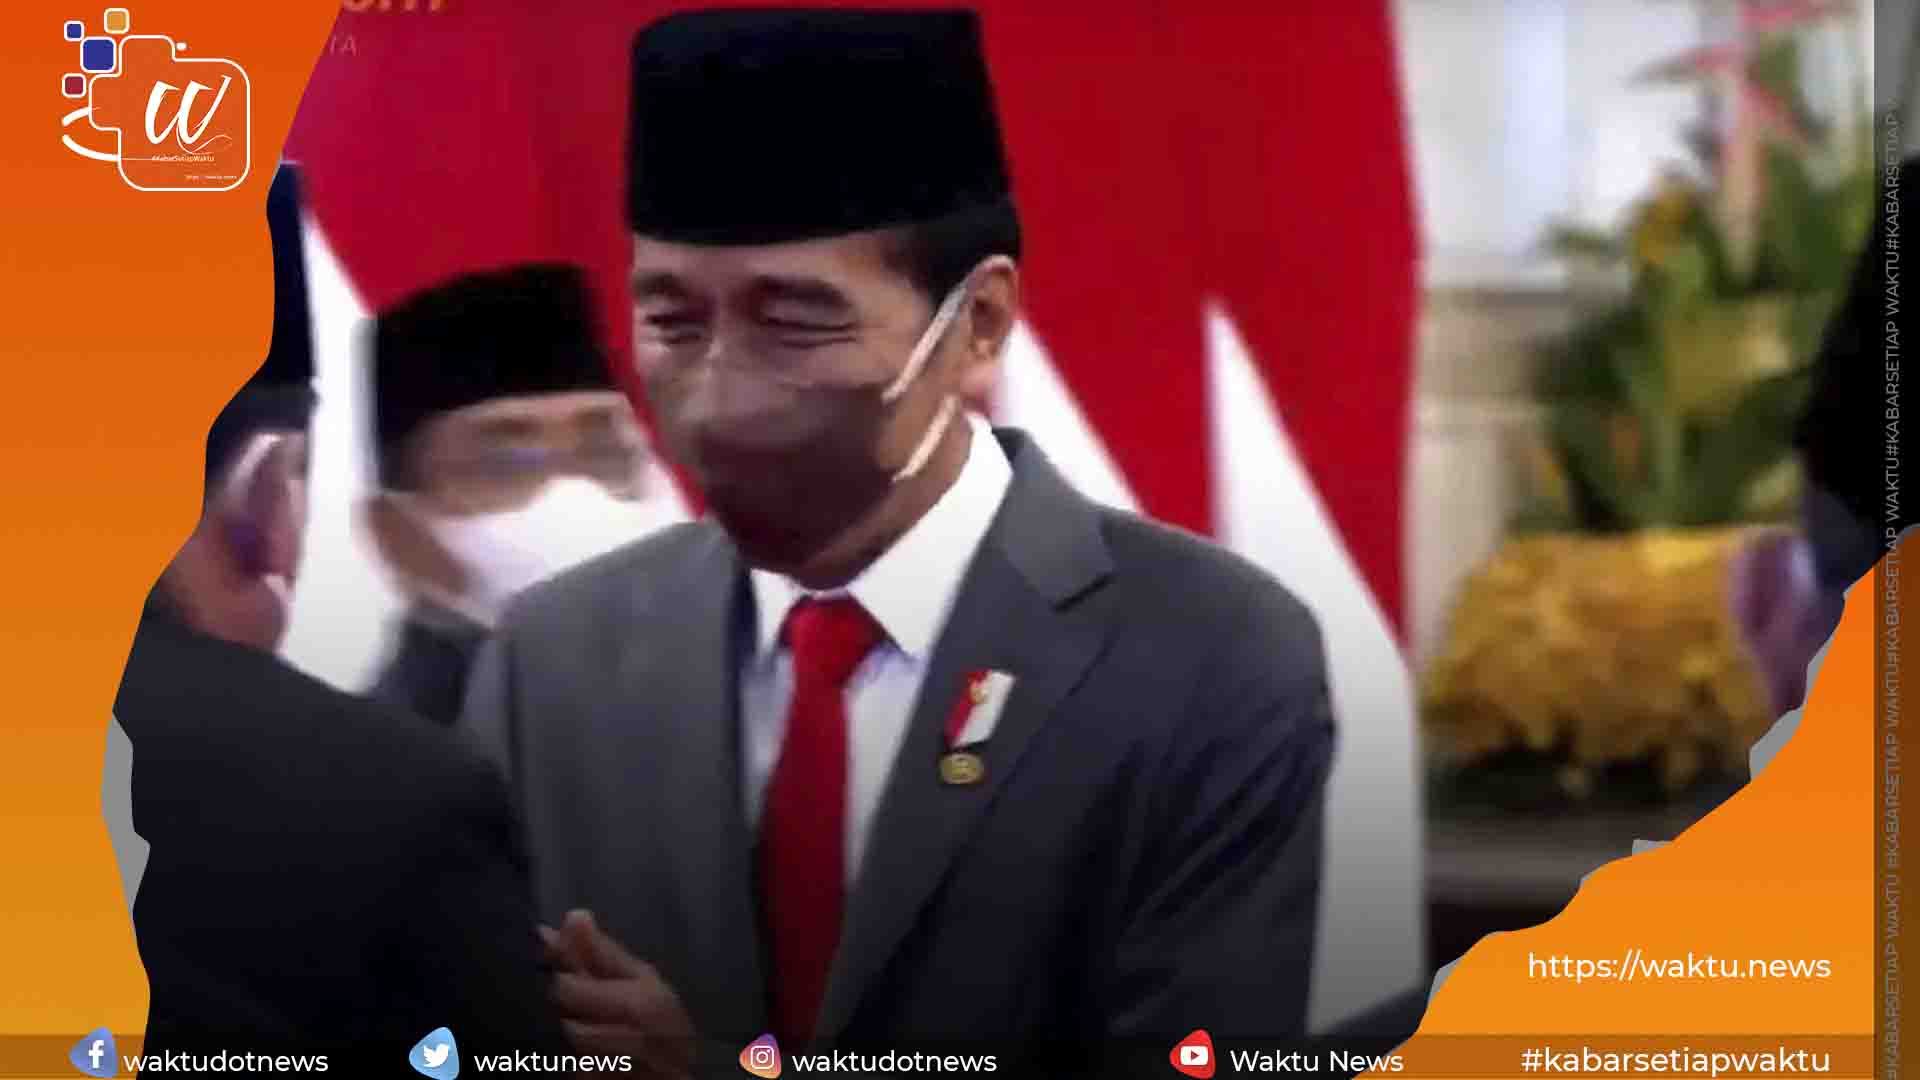 Presiden Jokowi reshuffle Kabinet Indonesia Maju